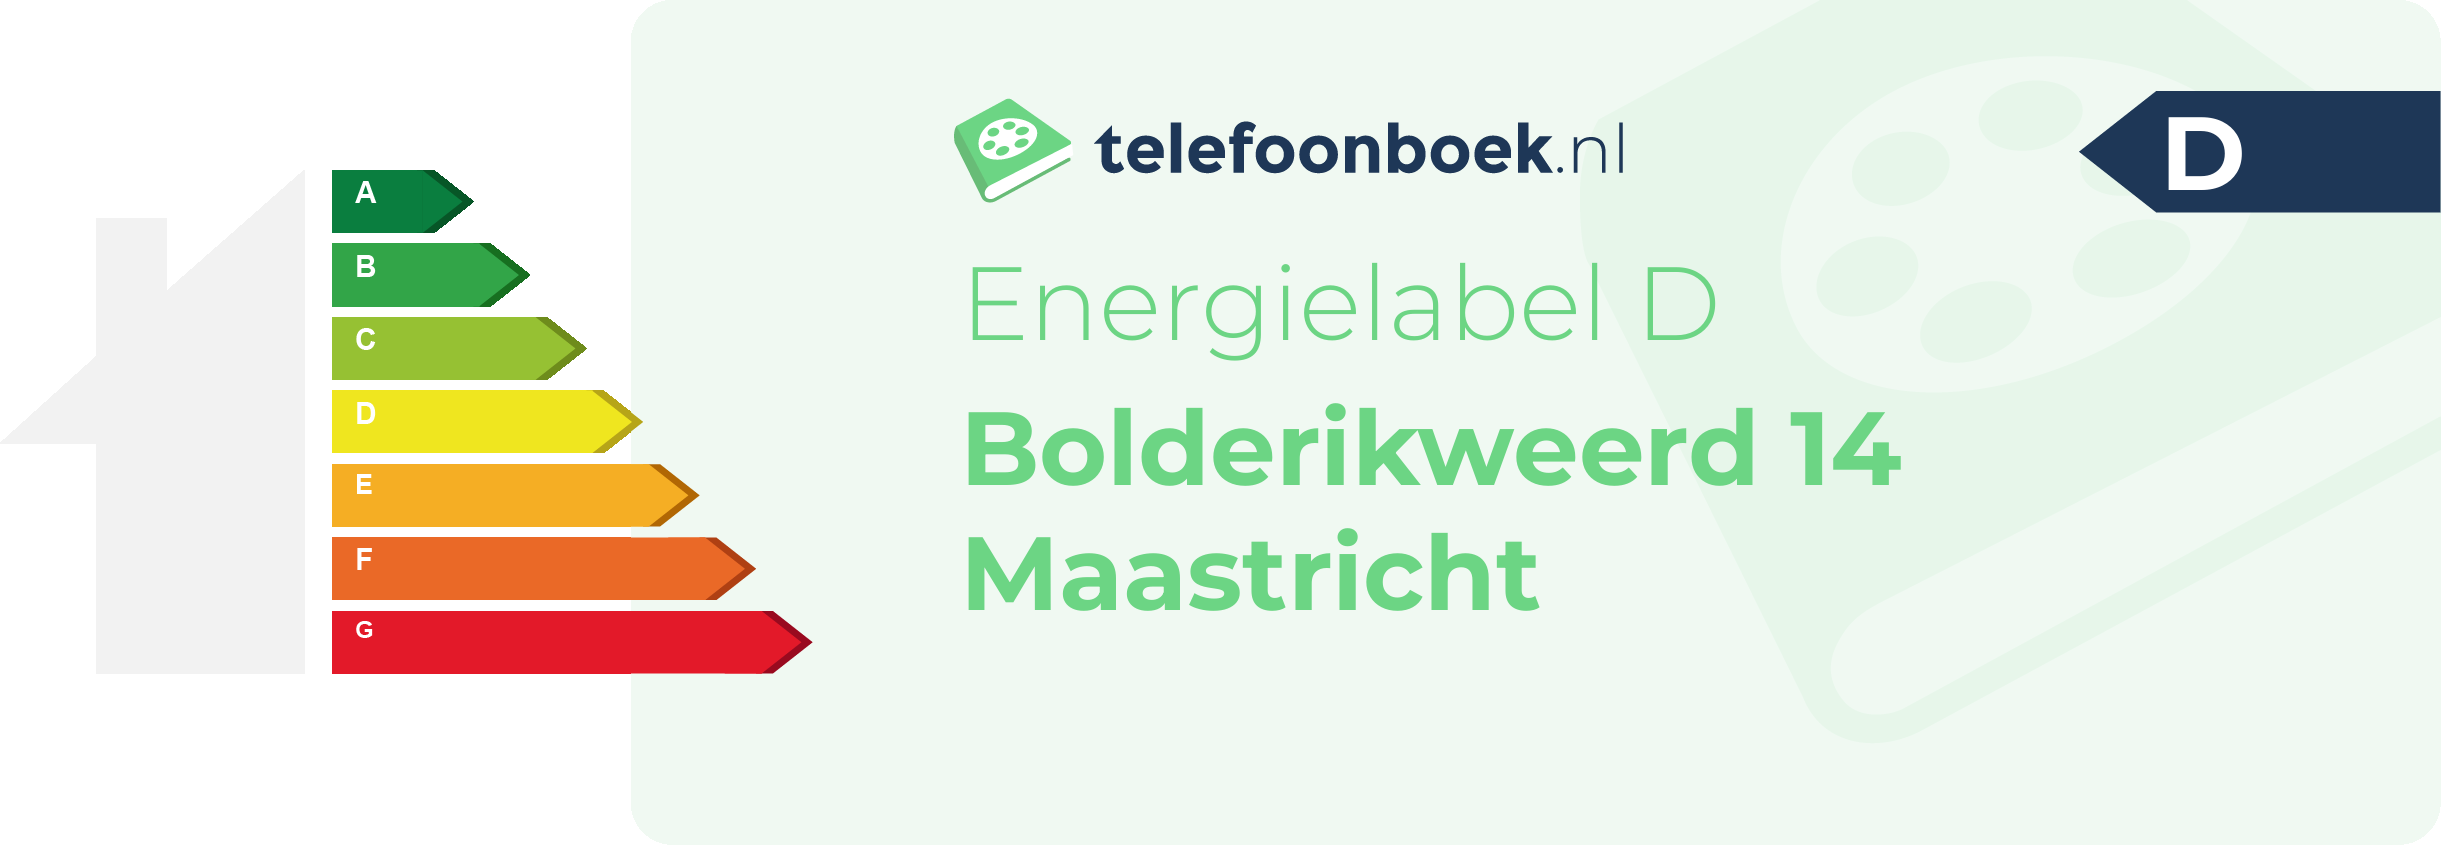 Energielabel Bolderikweerd 14 Maastricht